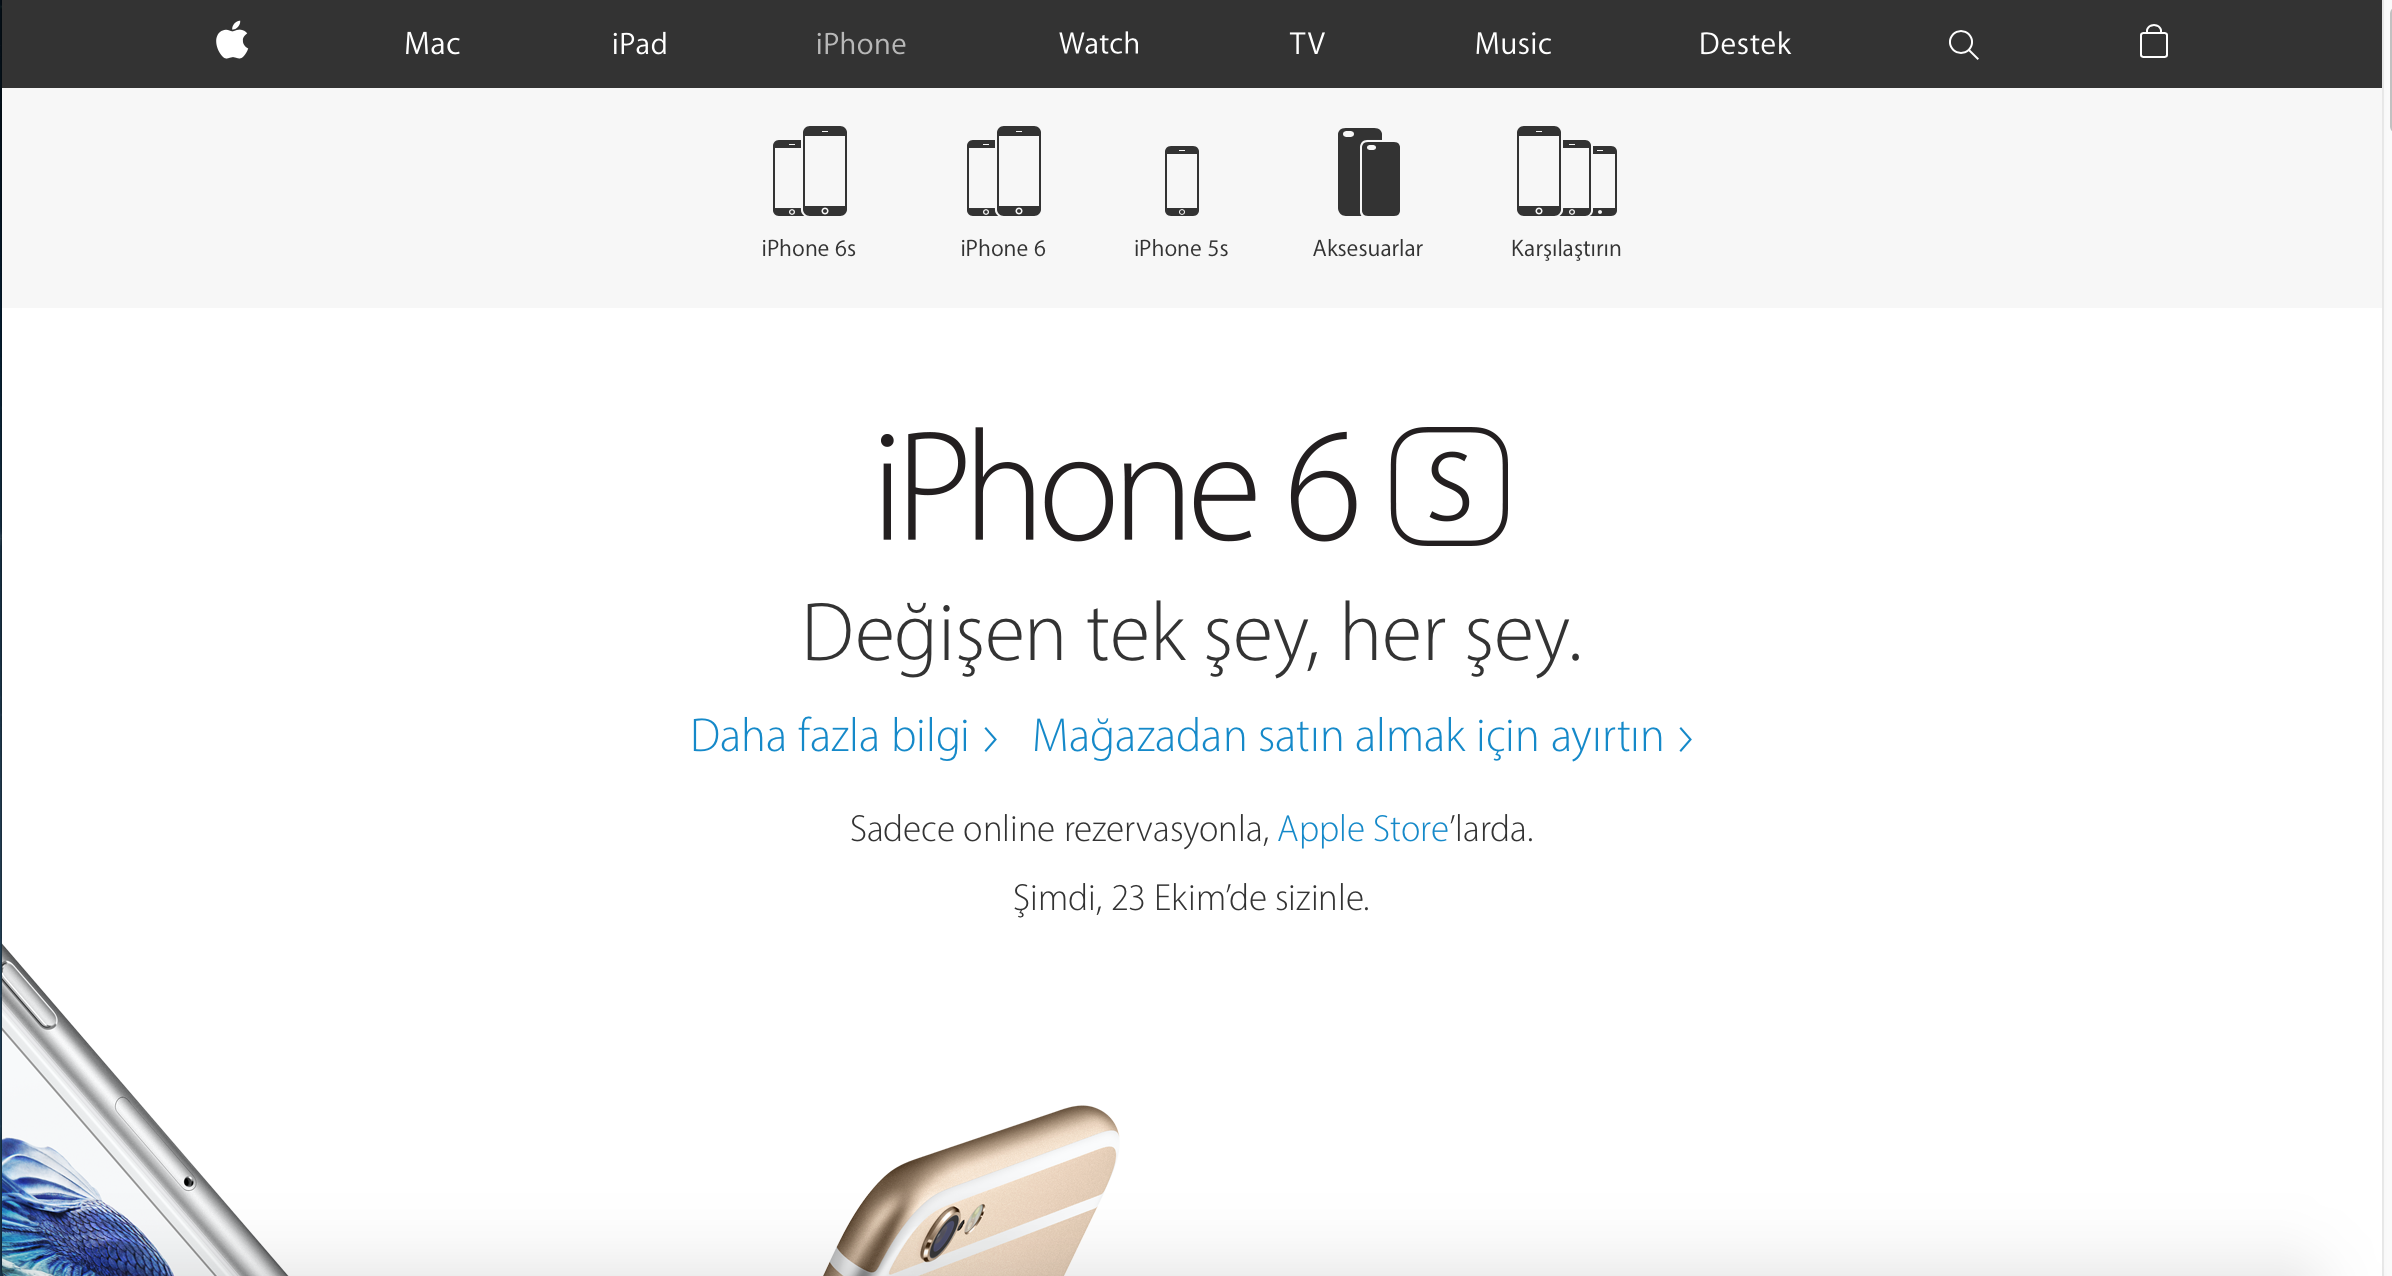  iPhone 6s & 6s Plus Online Apple Store'da Rezervasyona Açıldı !!